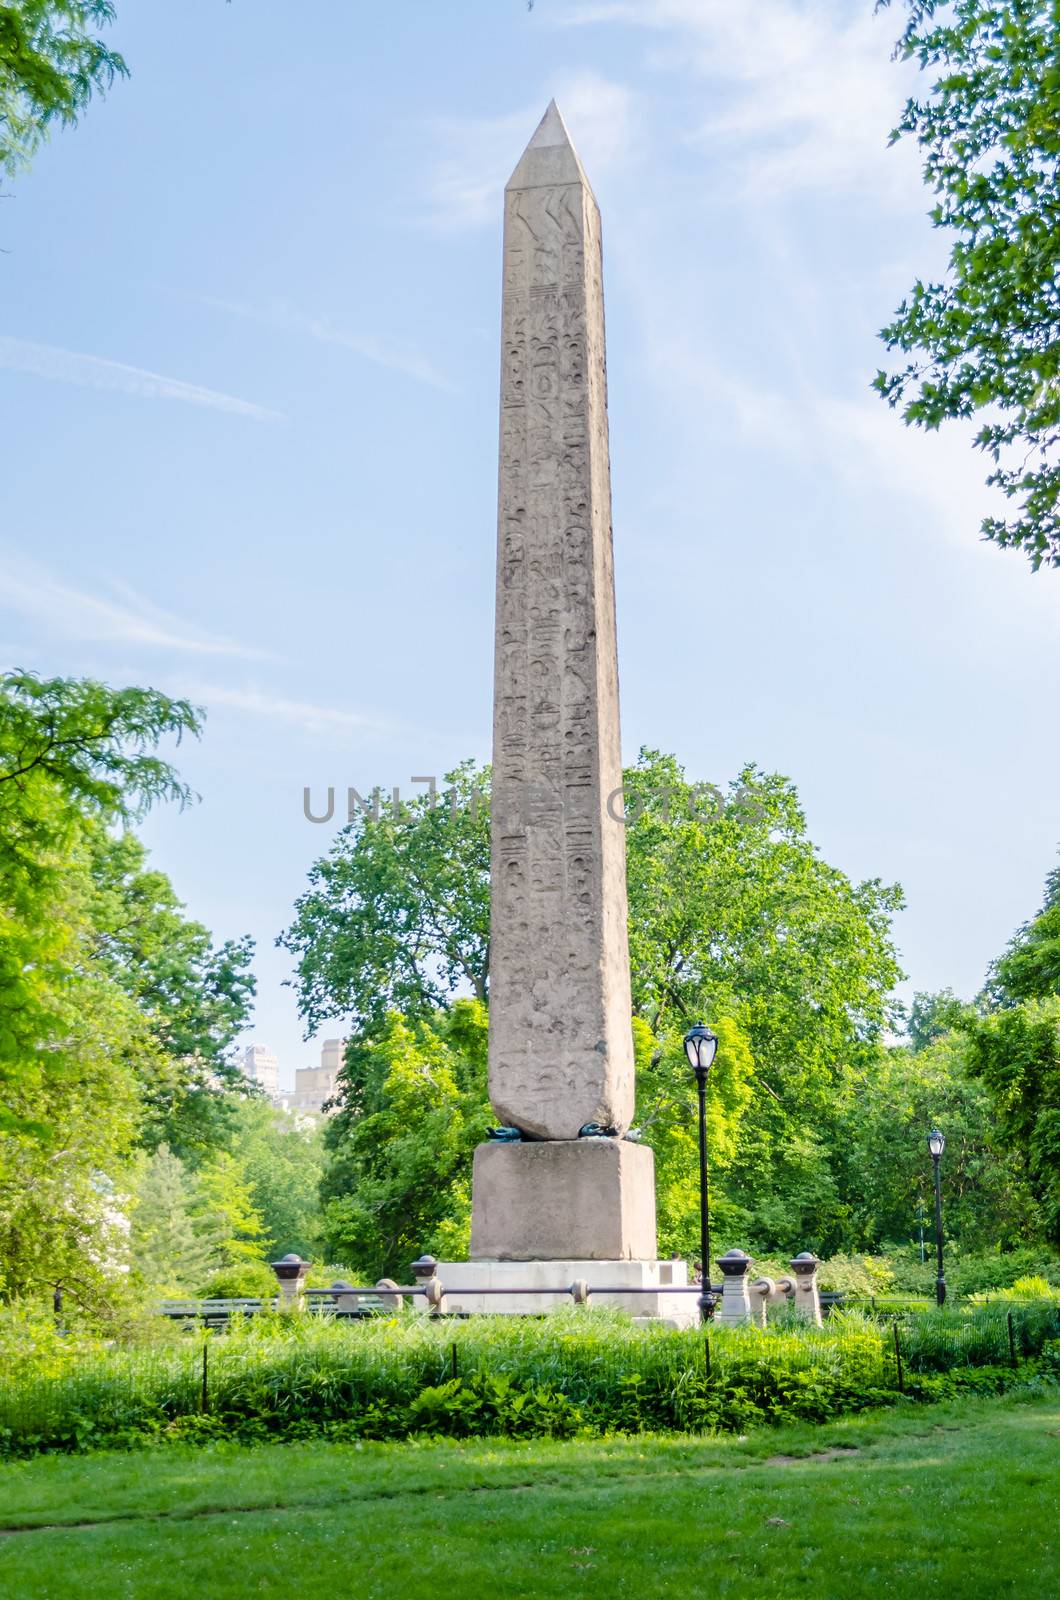 Obelisk in Central Park, New York by marcorubino